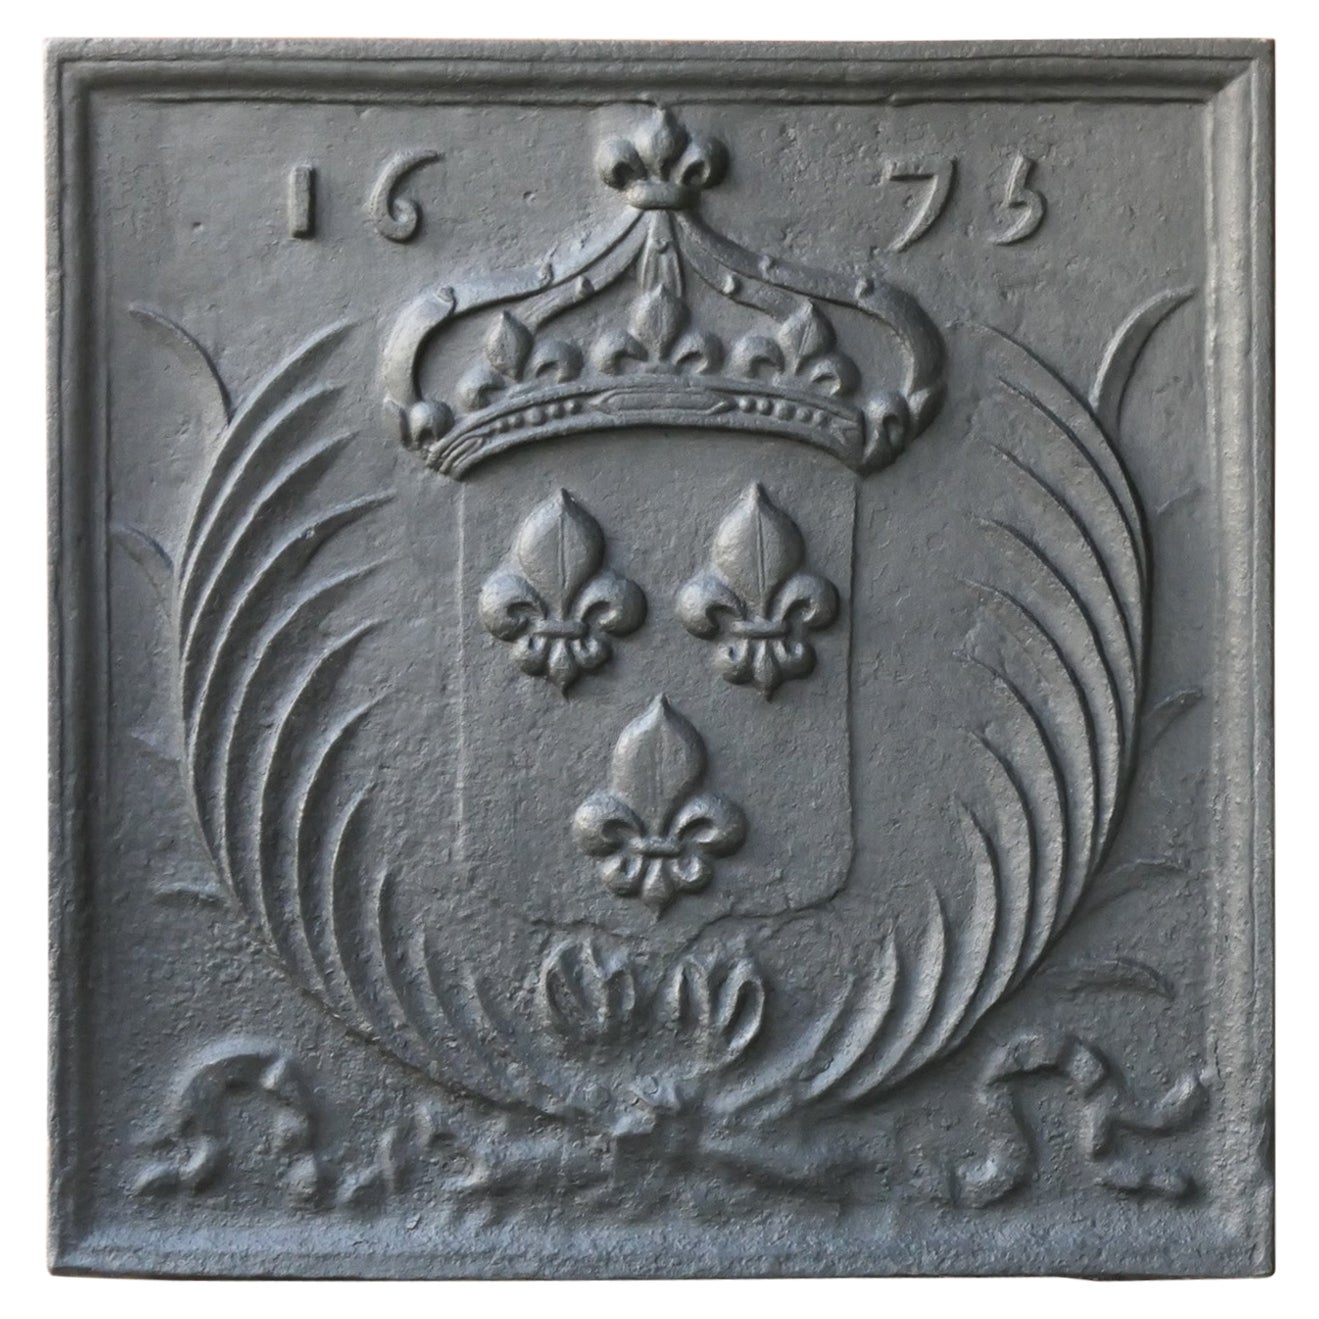 Plaque de cheminée Louis XIV du 17ème siècle « Arms of France »